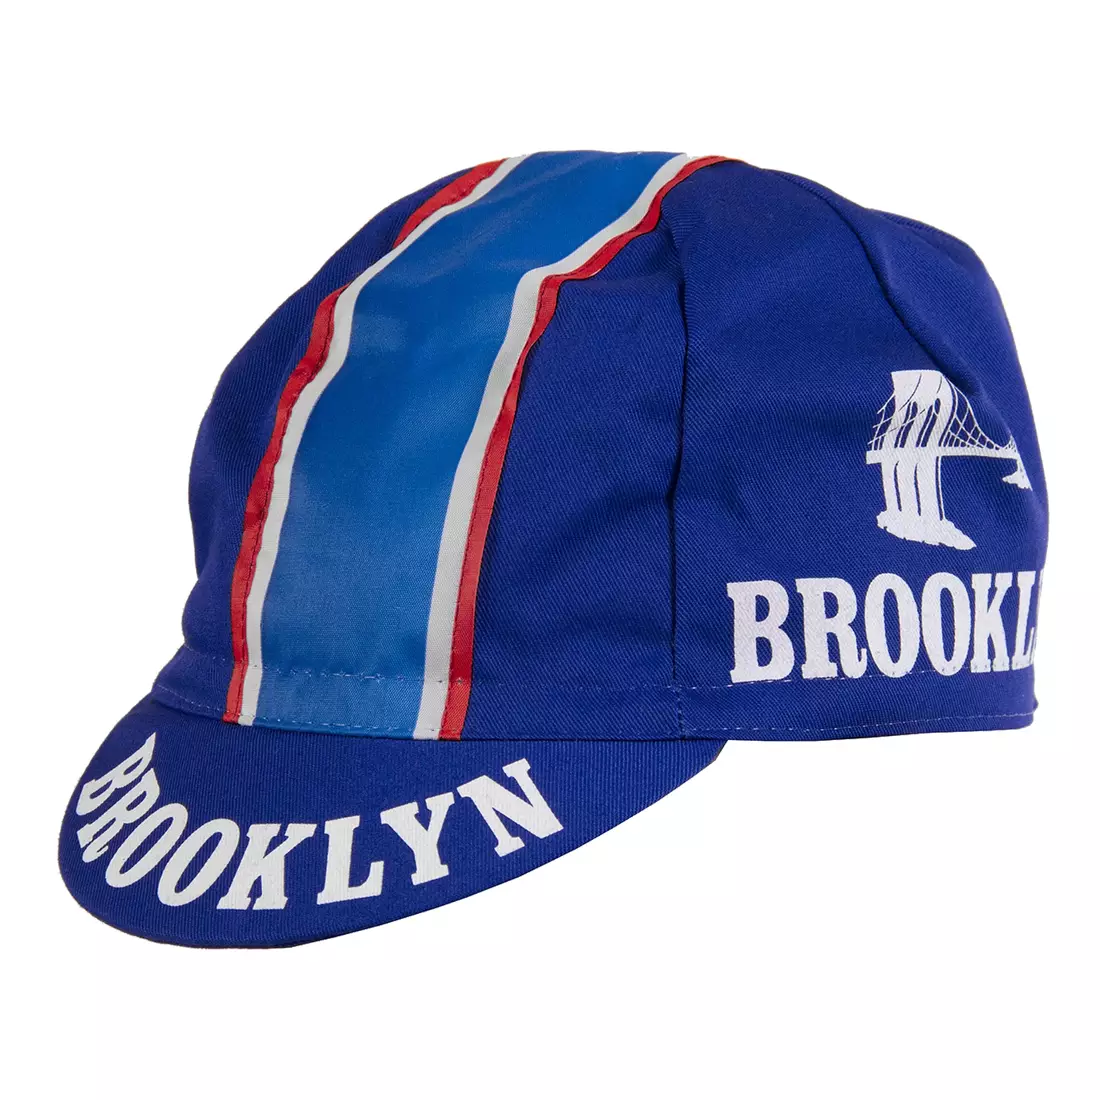 Șapcă de ciclism GIORDANA SS18 - Brooklyn - Tradițional GI-COCA-TEAM-BROK mărime unică